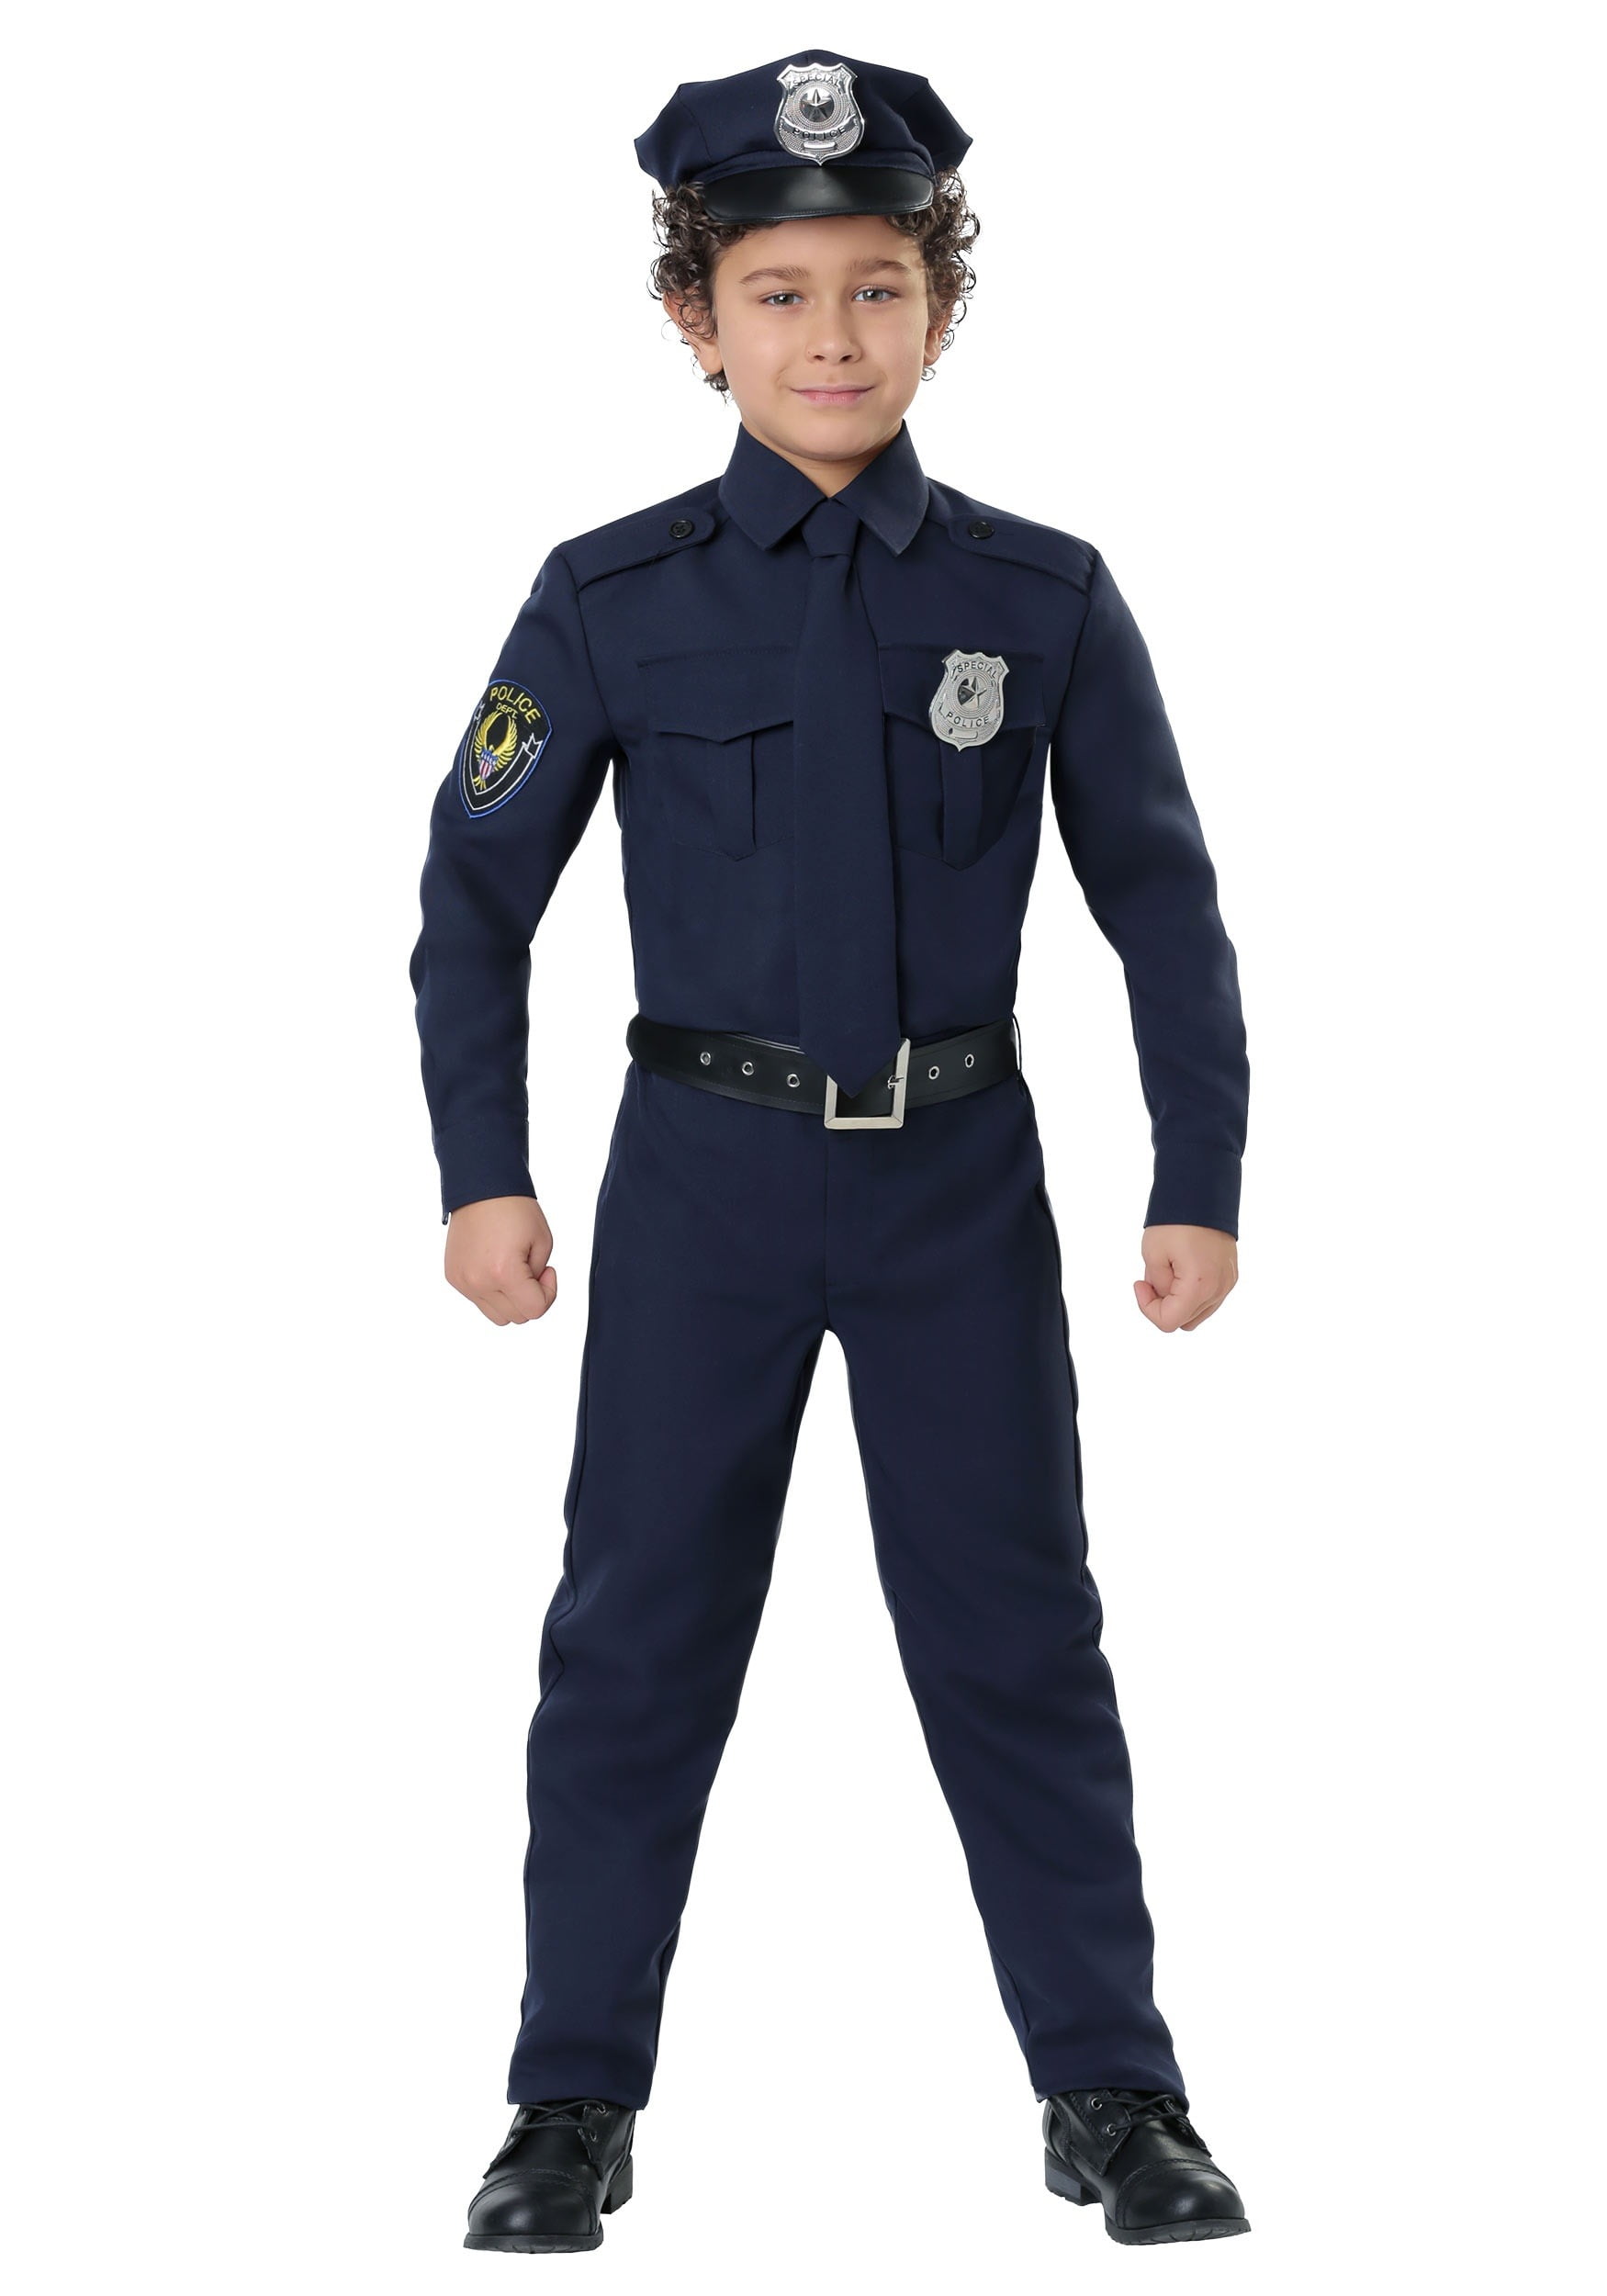 Мальчик милиционер. Полицейская форма для детей. Костюм полицейского. Детский костюм милиционера. Костюм полиции для детей.